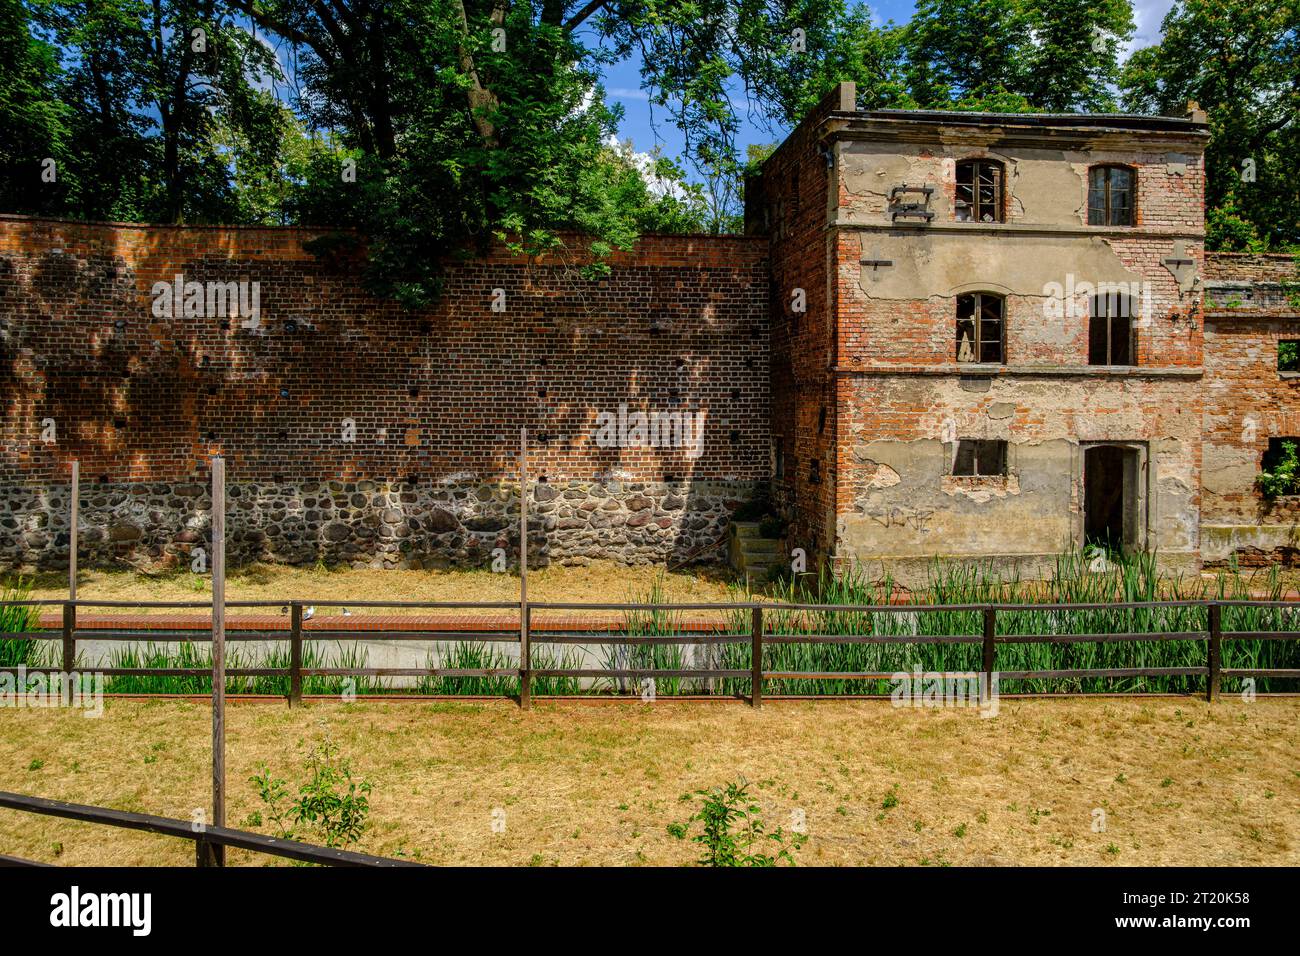 Verlassenes, baufälliges Gebäude integriert in die alte historische Stadtmauer von Namyslow (Namslau), Woiwodschaft Oppeln, Polen. Stockfoto